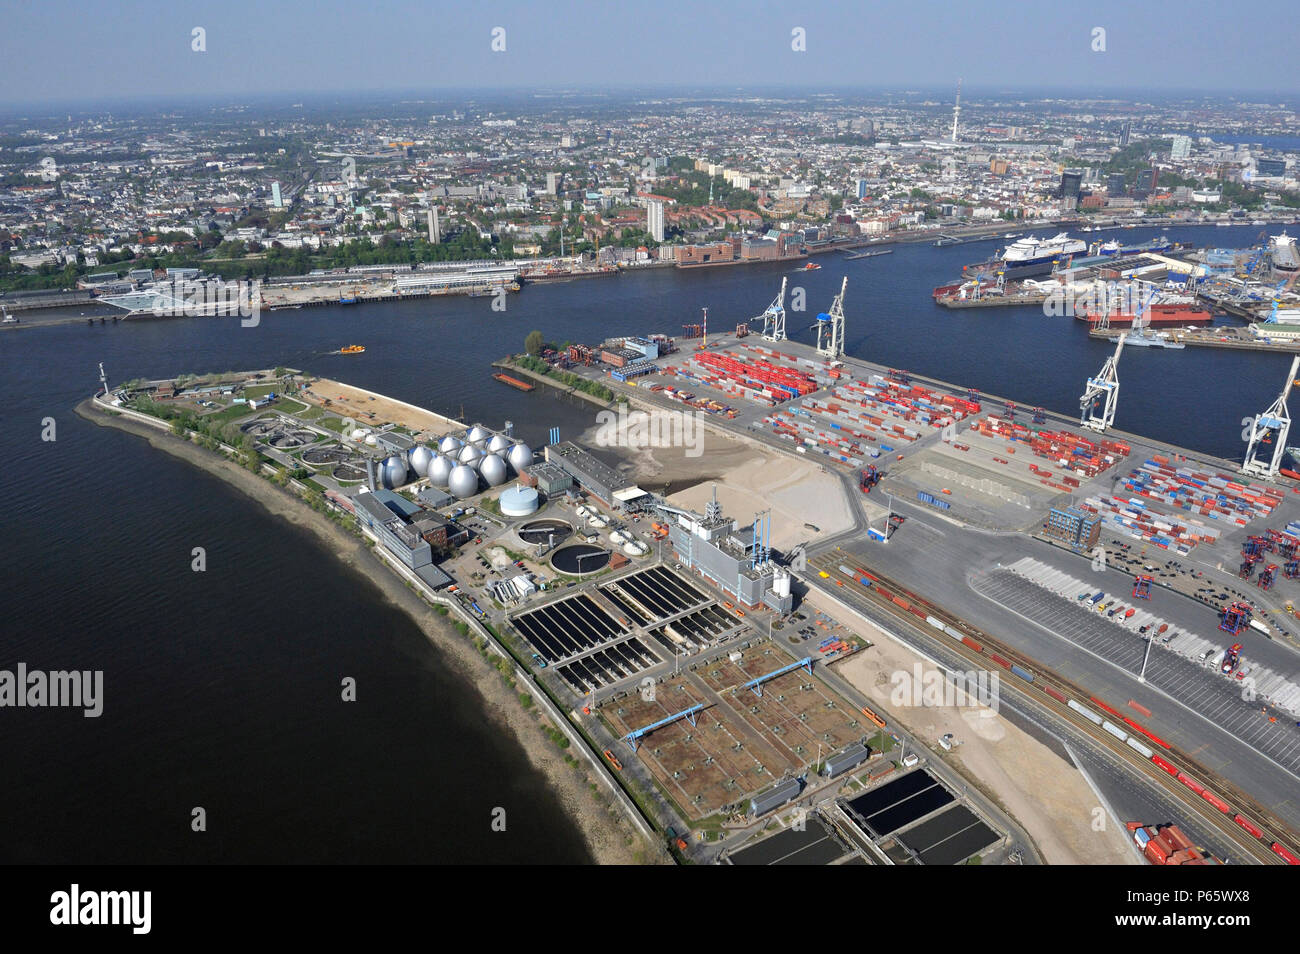 Las obras de alcantarillado de Hamburgo, Alemania, vista aérea Foto de stock